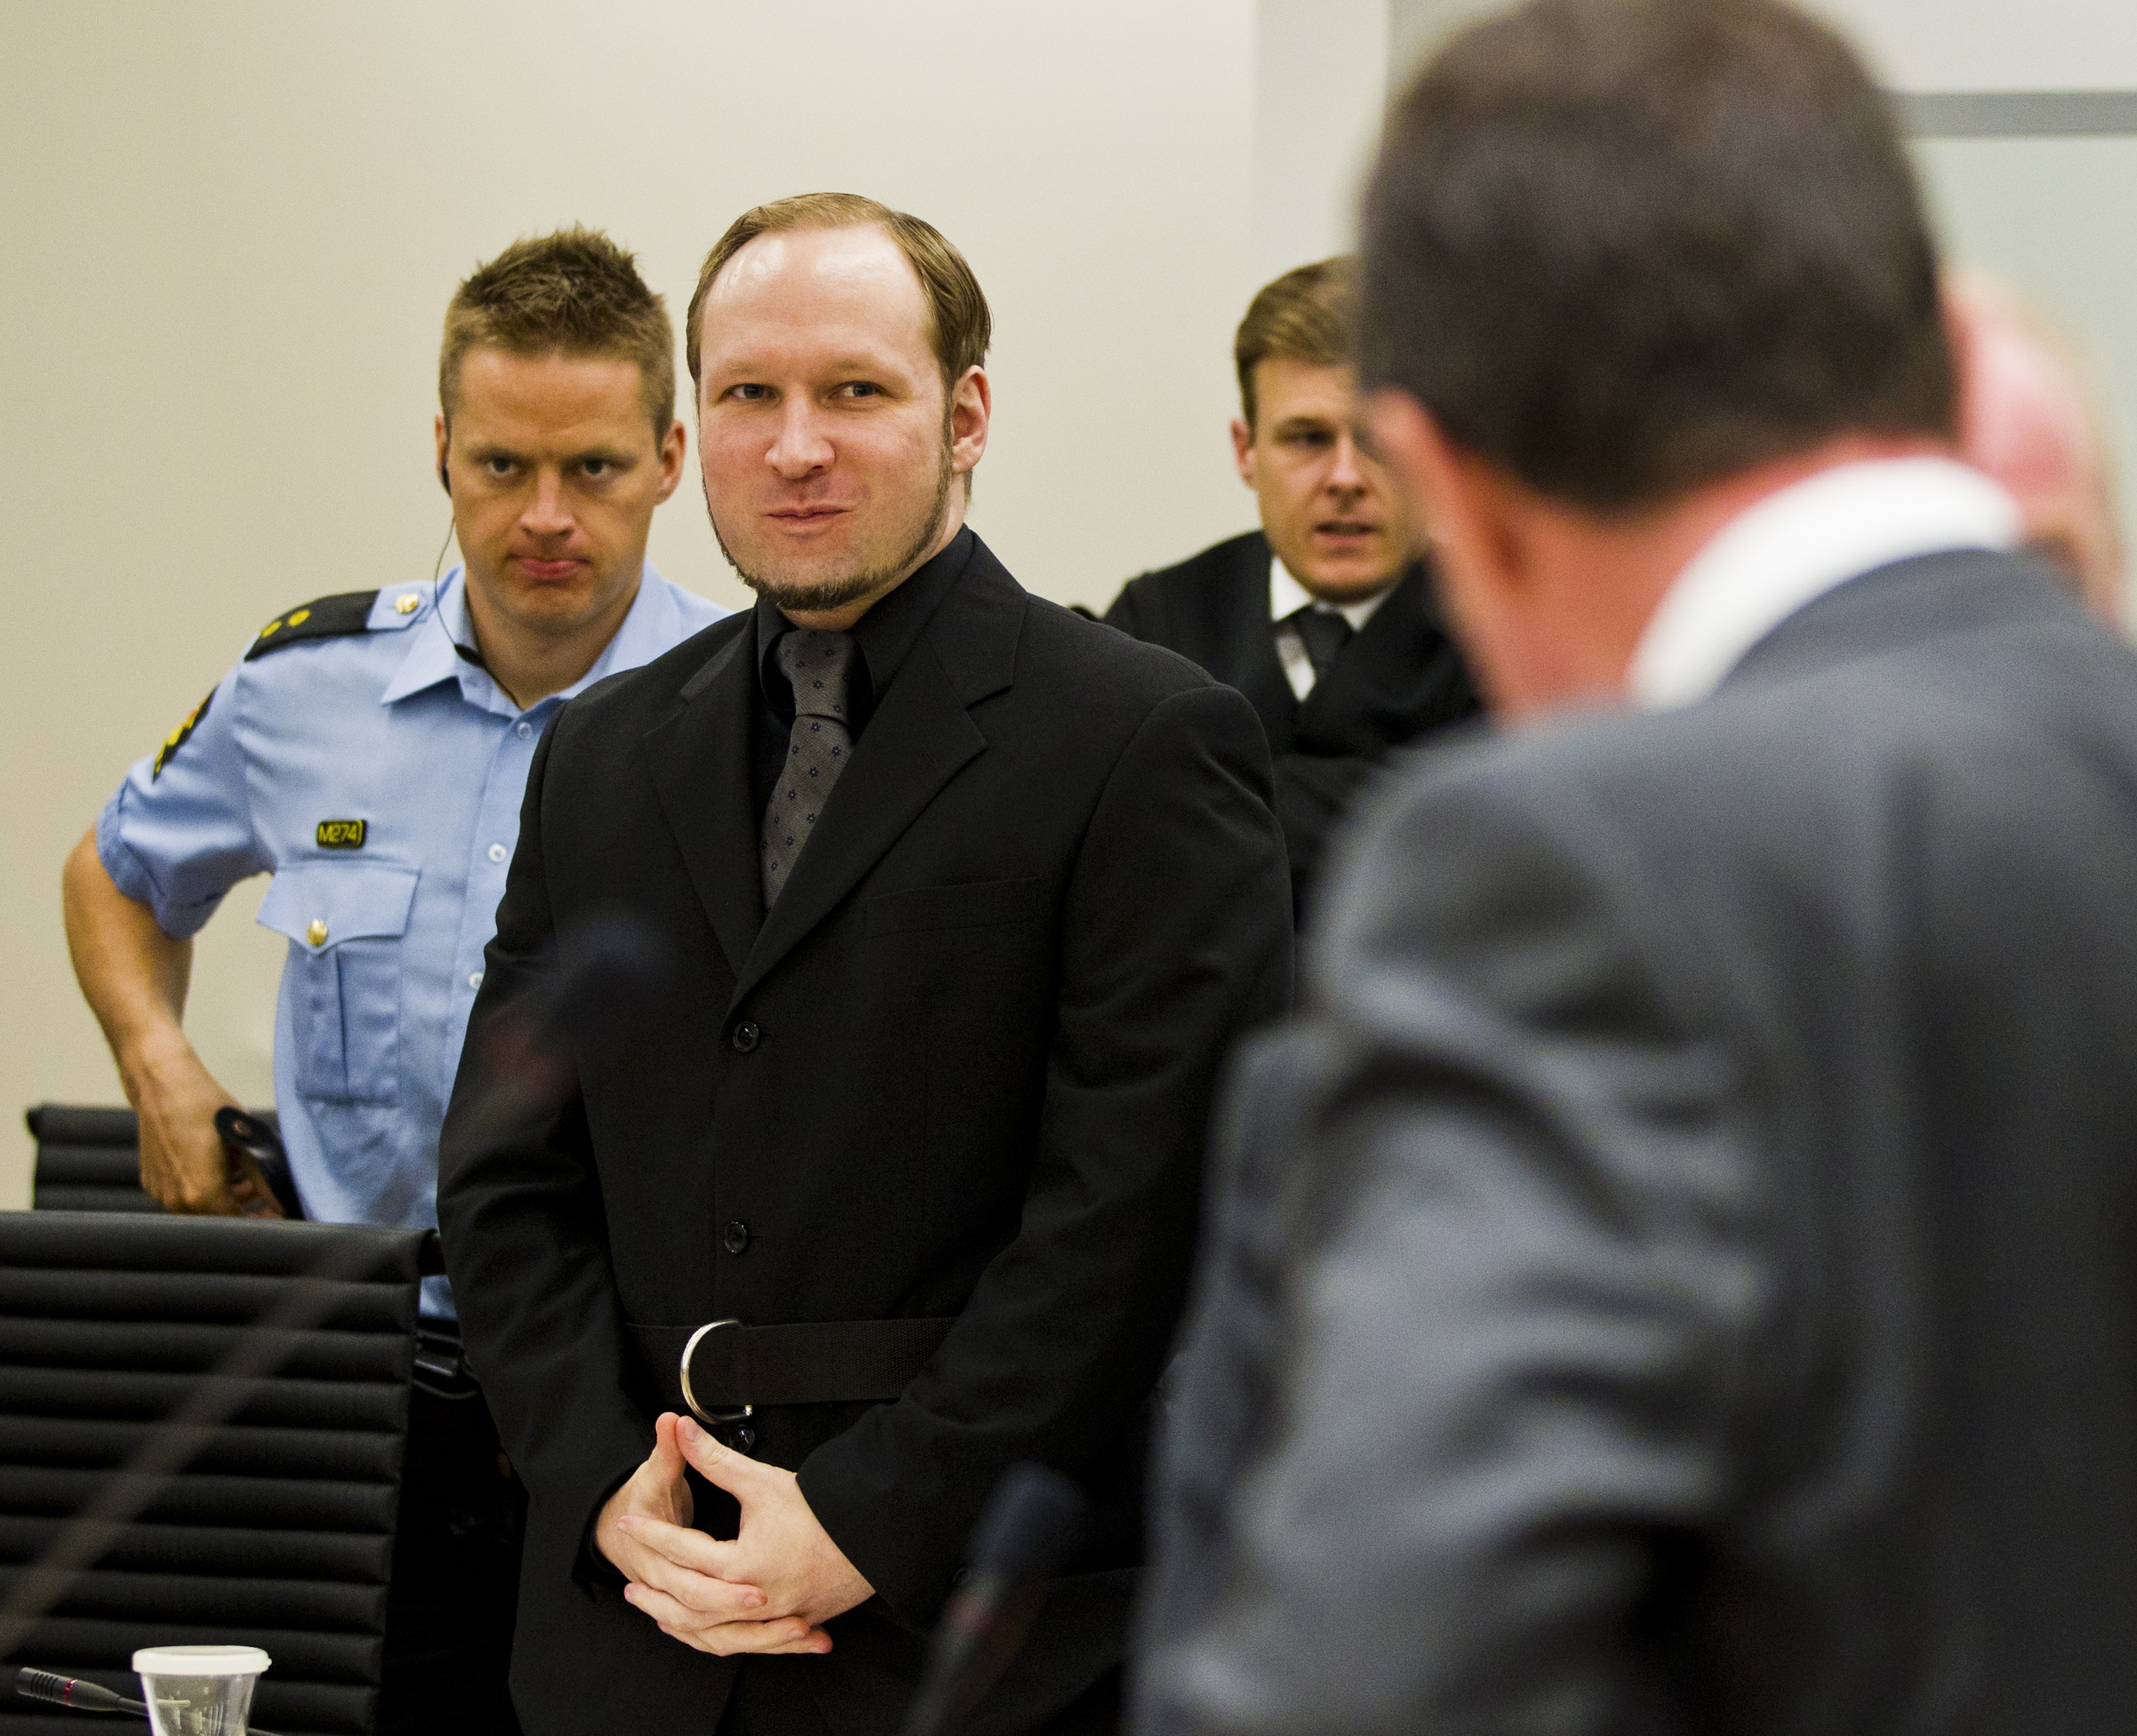 terrorist, Anders Behring Breivik, Rättegång, Åklagare, Massmördare, Oslo